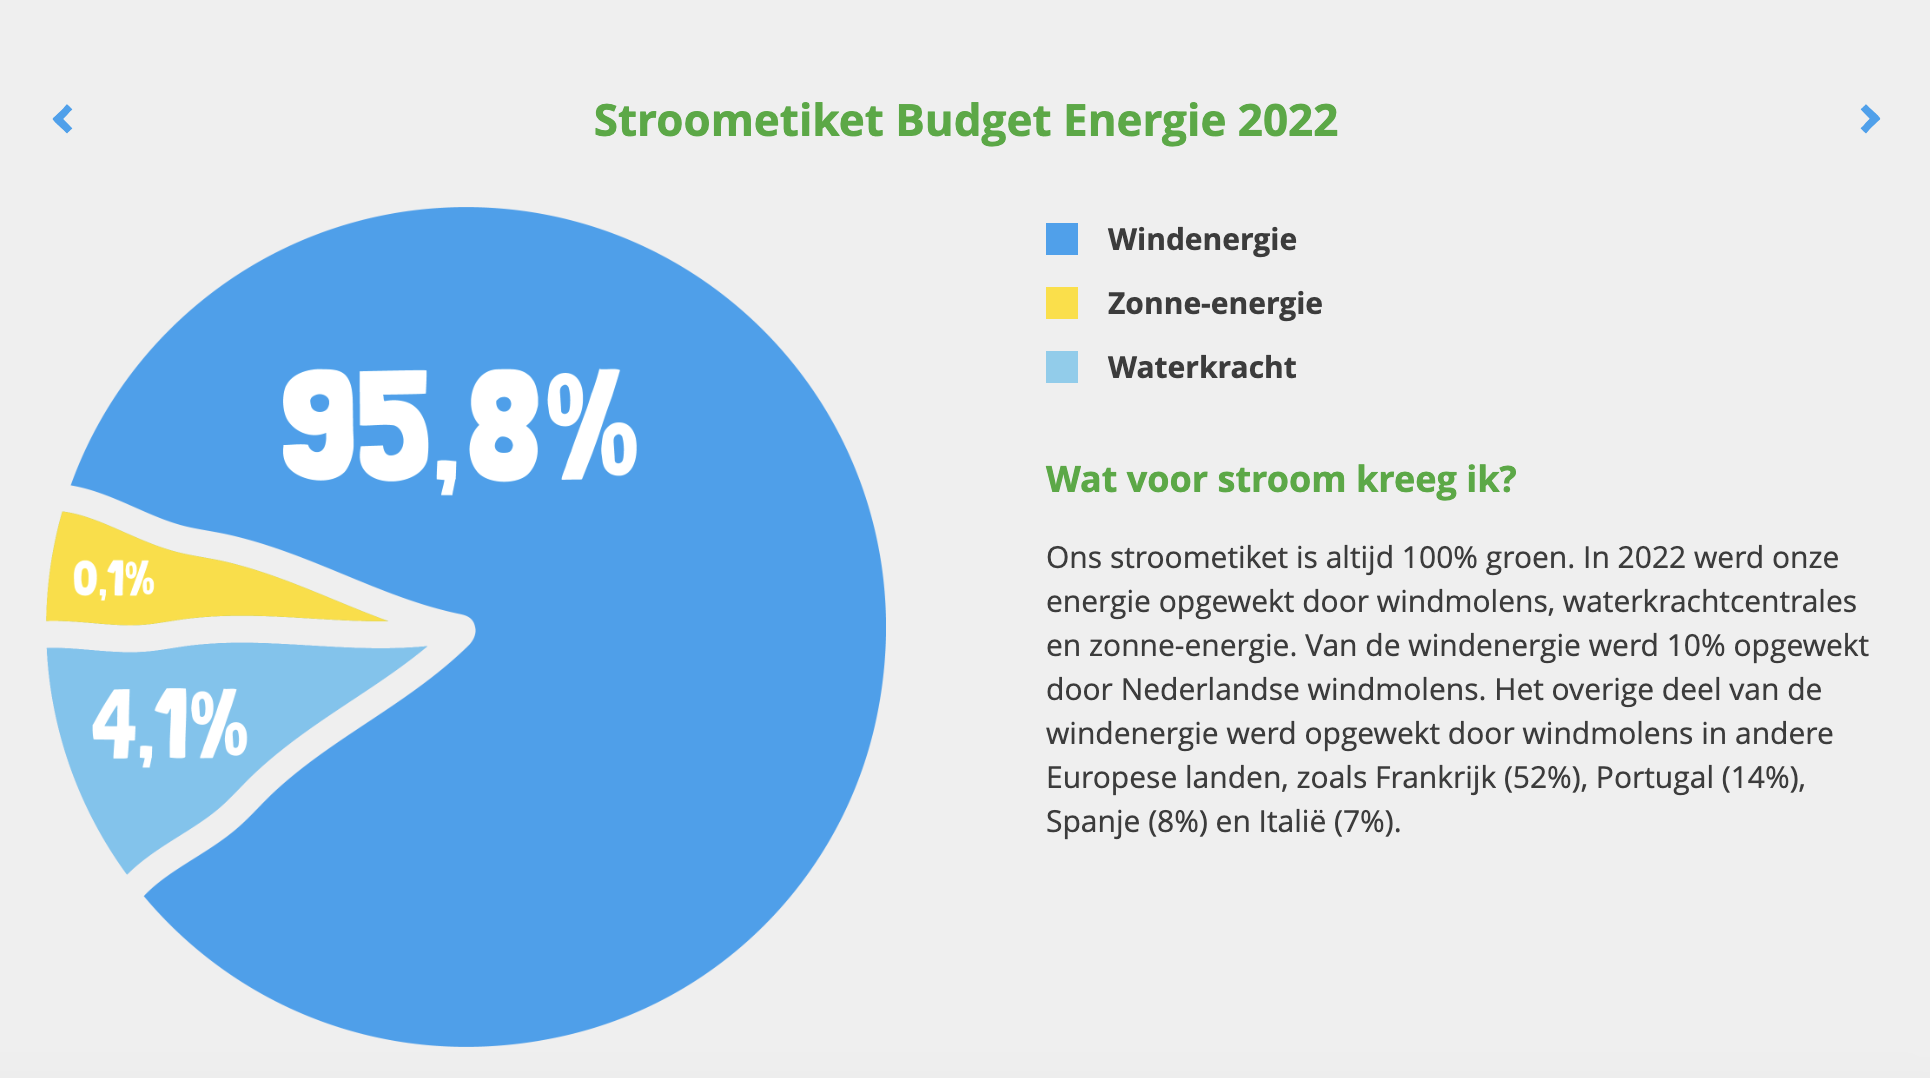 Stroometiket budget energie